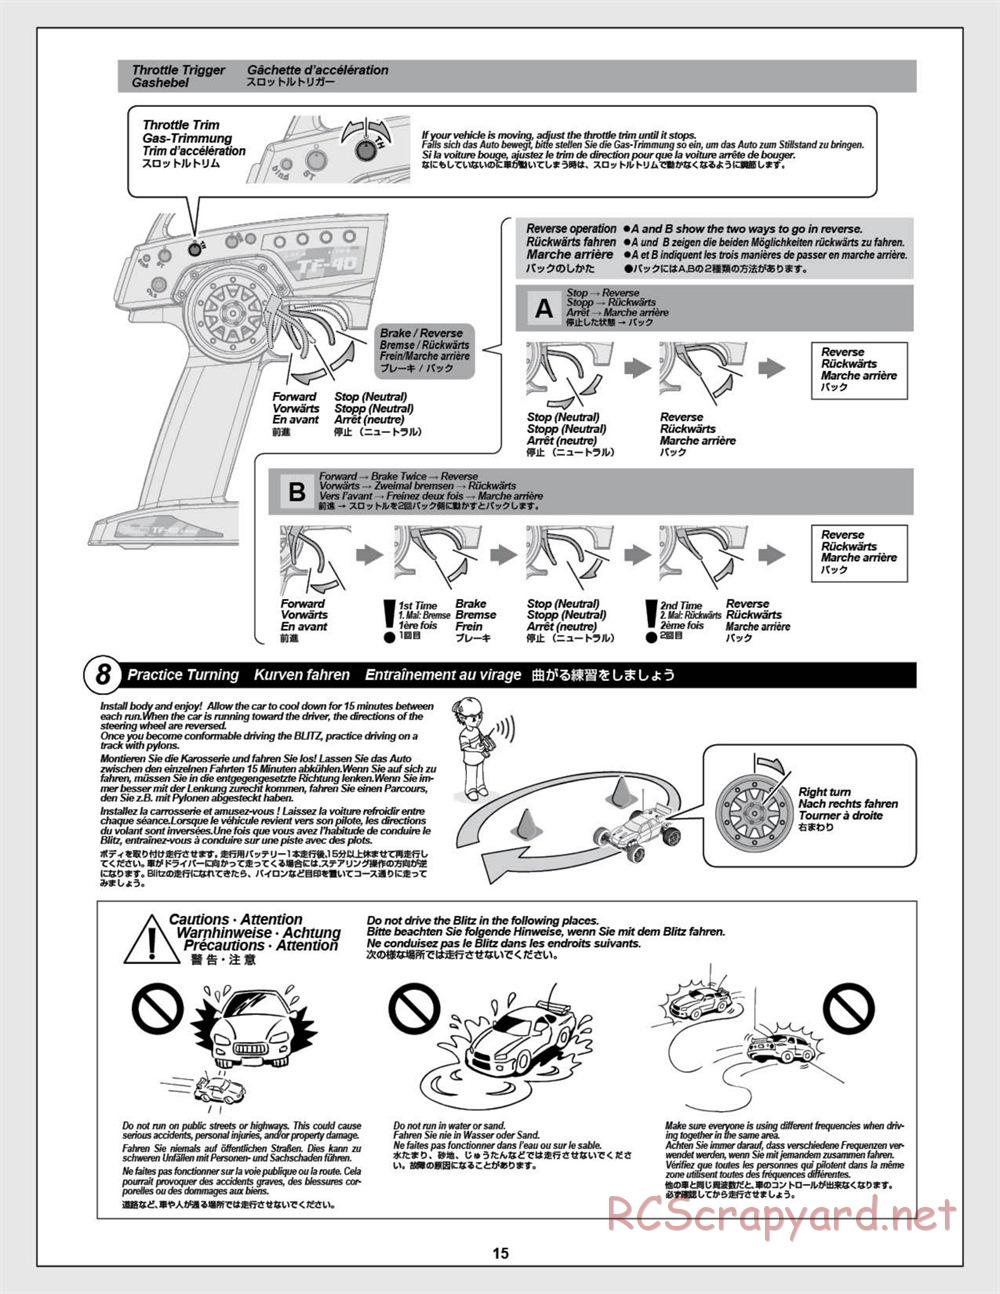 HPI - E-Firestorm-10T - Manual - Page 15